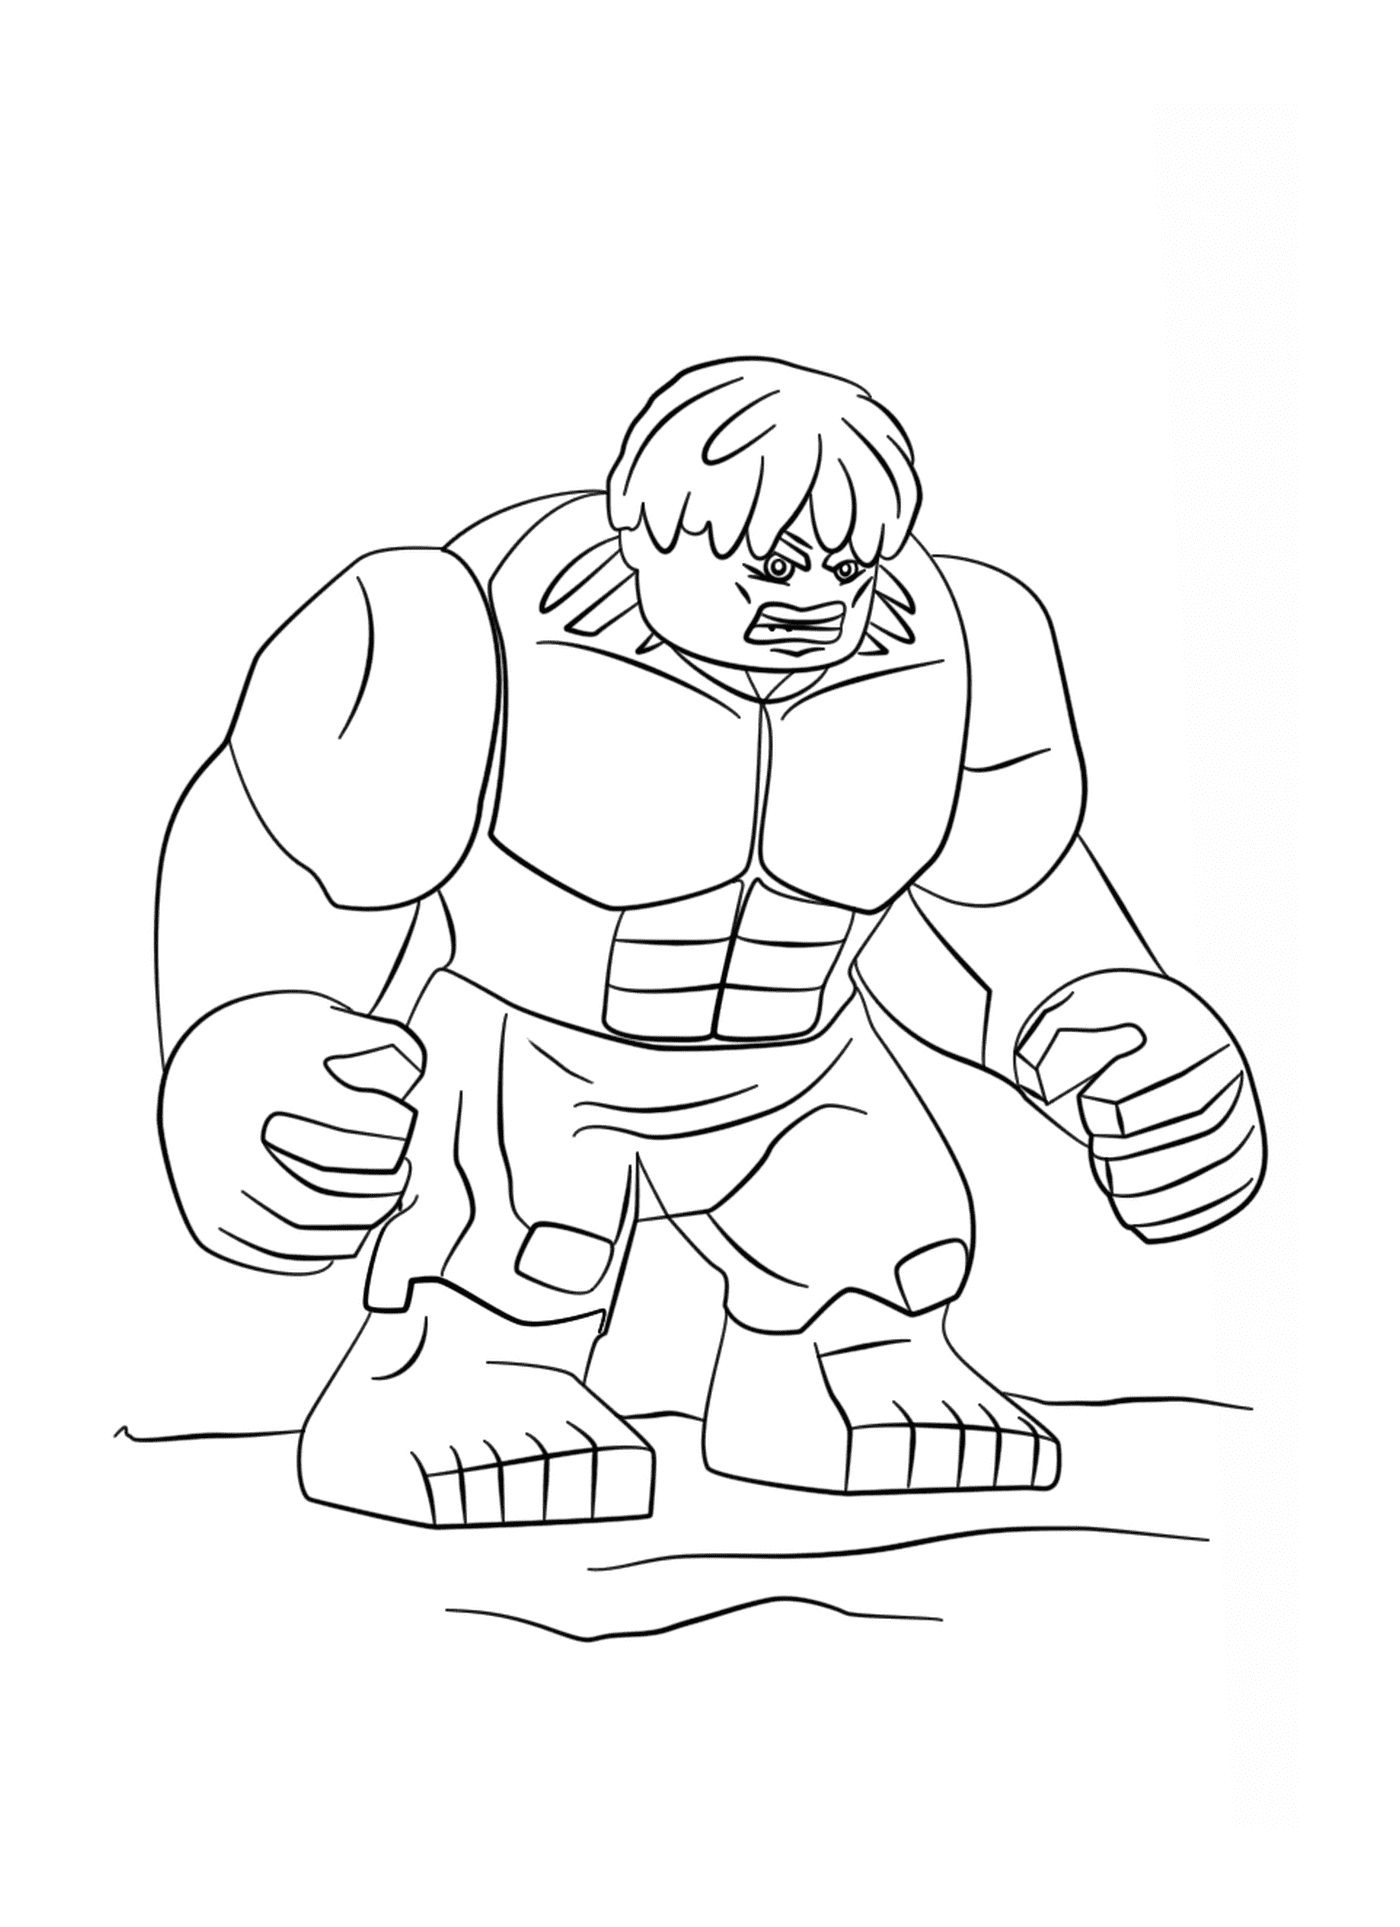   Hulk, un corps massif 